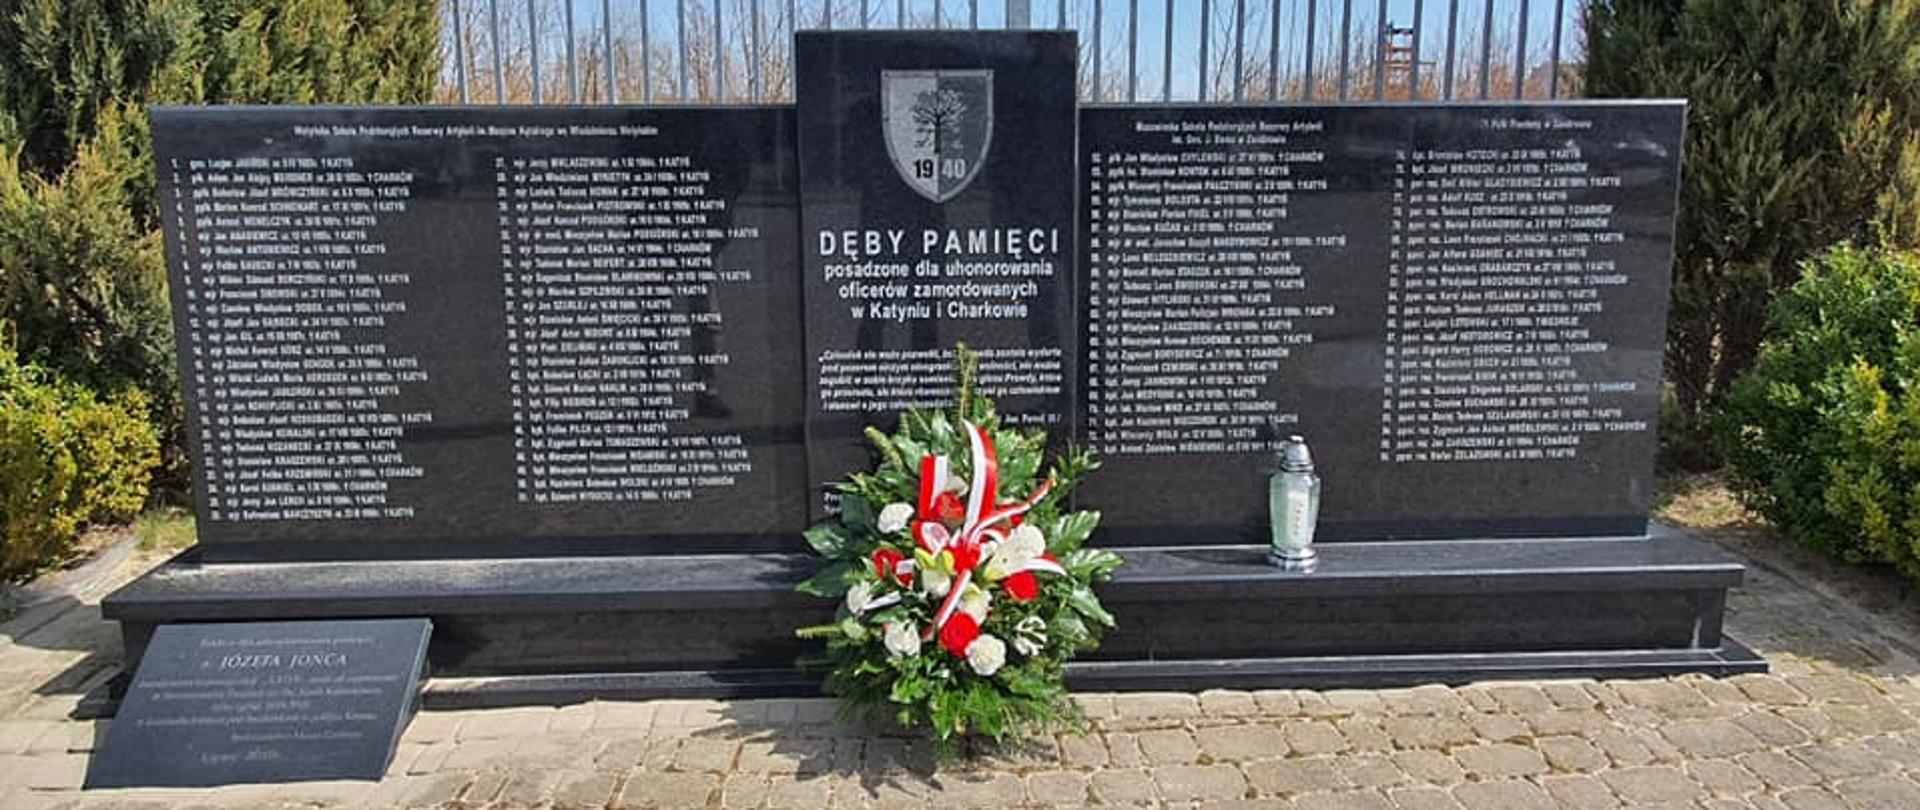 Władze samorządowe powiatu upamiętniły 82. rocznicę zbrodni w Katyniu